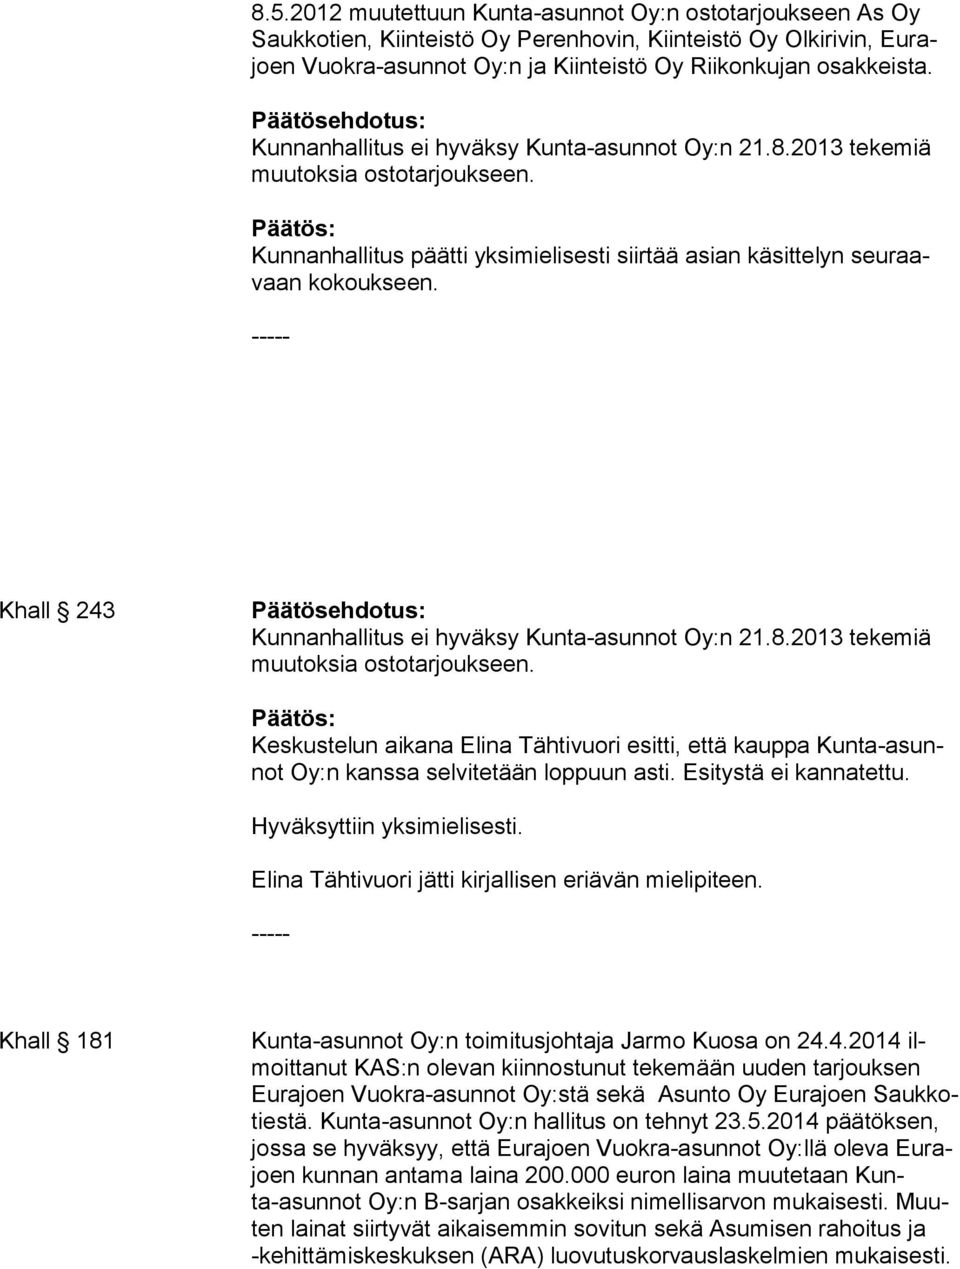 Khall 243 Kunnanhallitus ei hyväksy Kunta-asunnot Oy:n 21.8.2013 tekemiä muutoksia ostotarjoukseen.